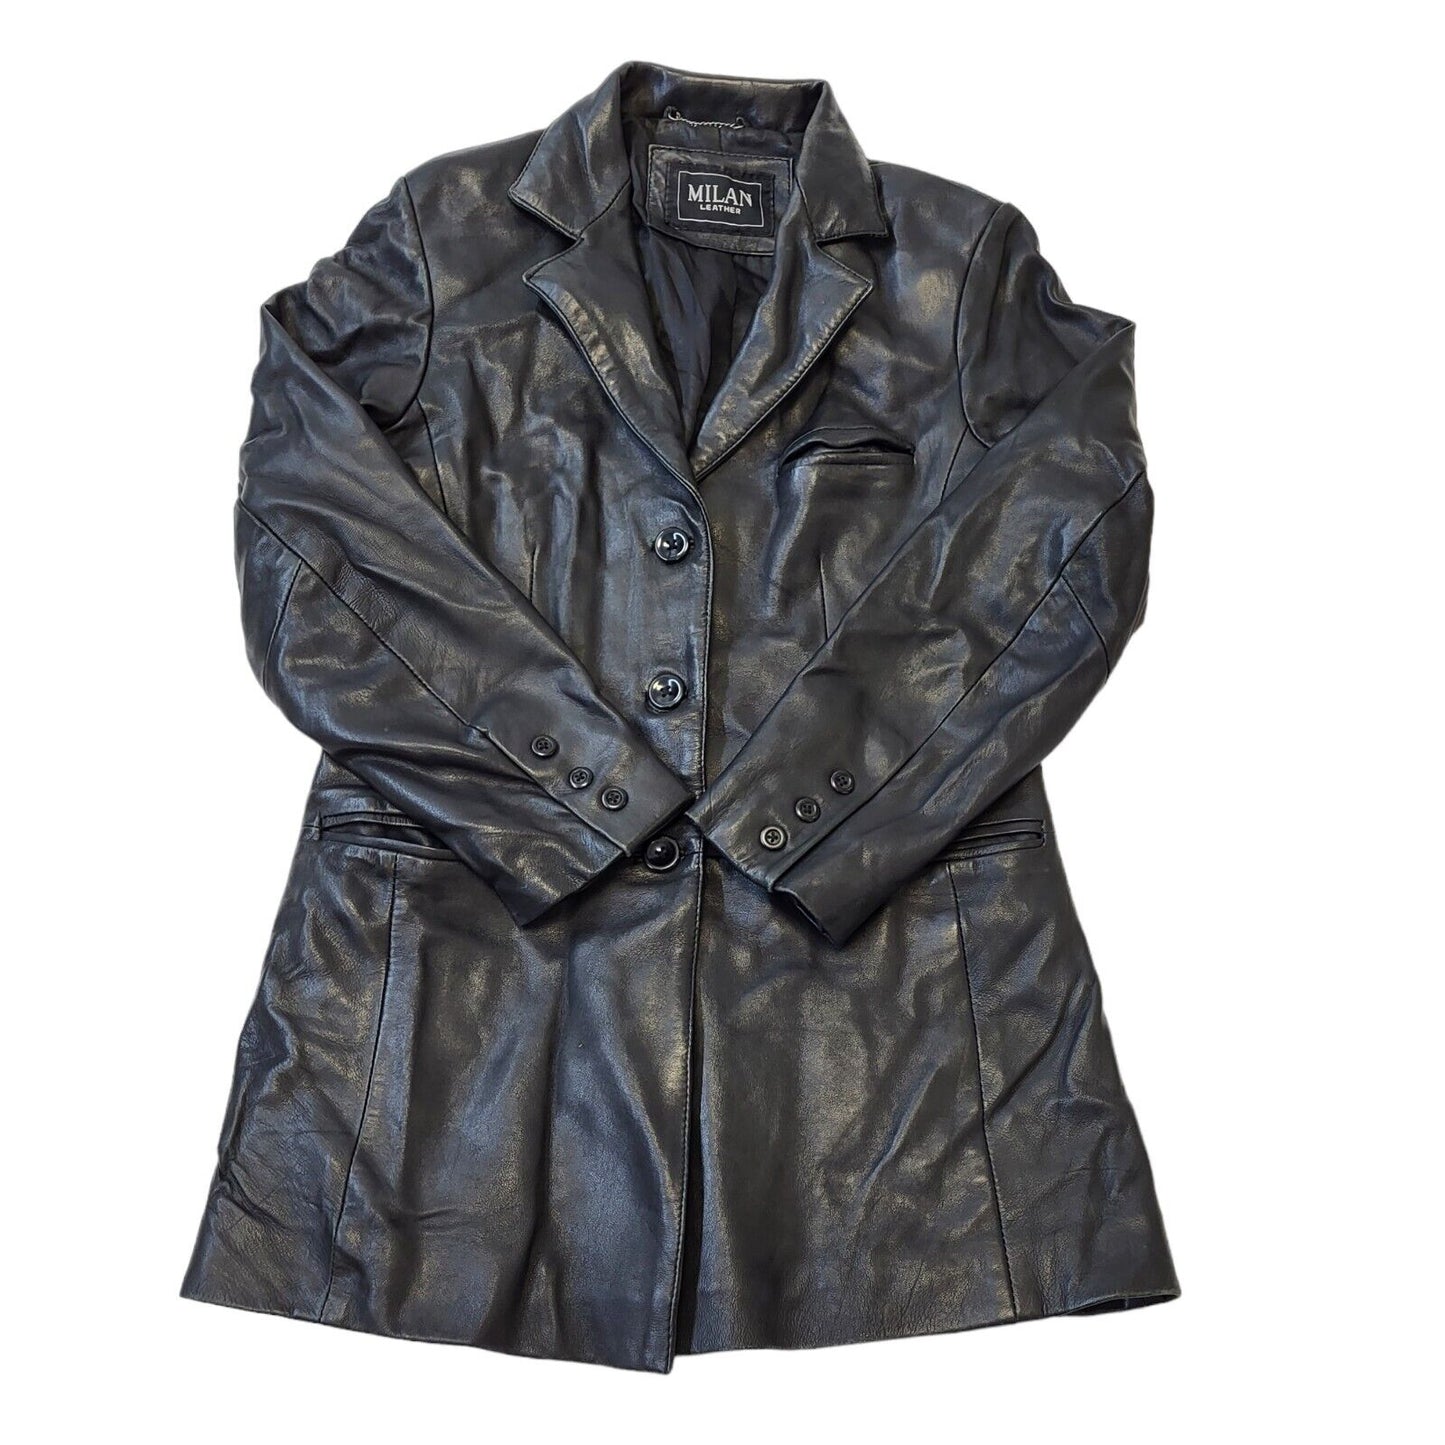 Milan Leather Jacket (10)